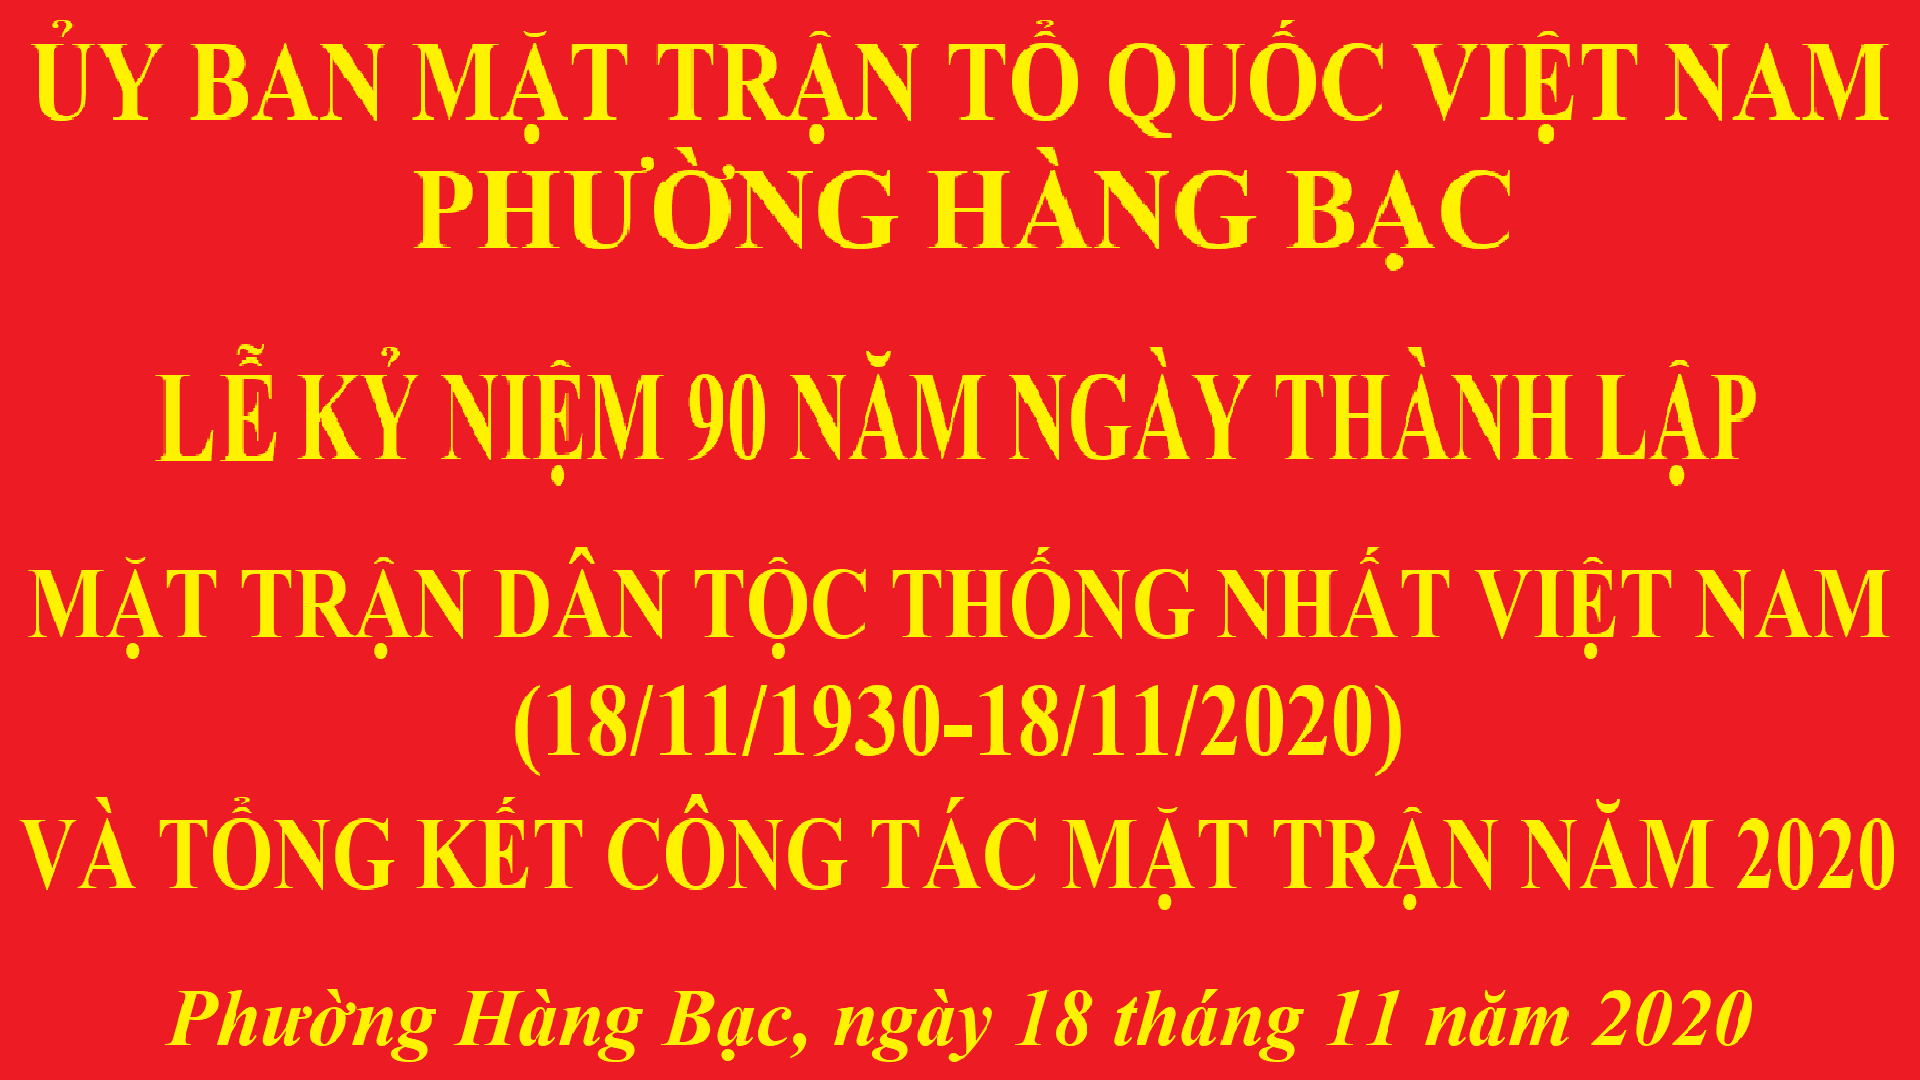 Uỷ ban MTTQ Việt Nam phường Hàng Bạc long trọng tổ chức Lễ kỷ niệm 90 năm ngày thành lập Mặt trận Dân tộc thống nhất Việt Nam - Ngày truyền thống Mặt trận Tổ quốc Việt Nam (18/11/1930 - 18/11/2020)